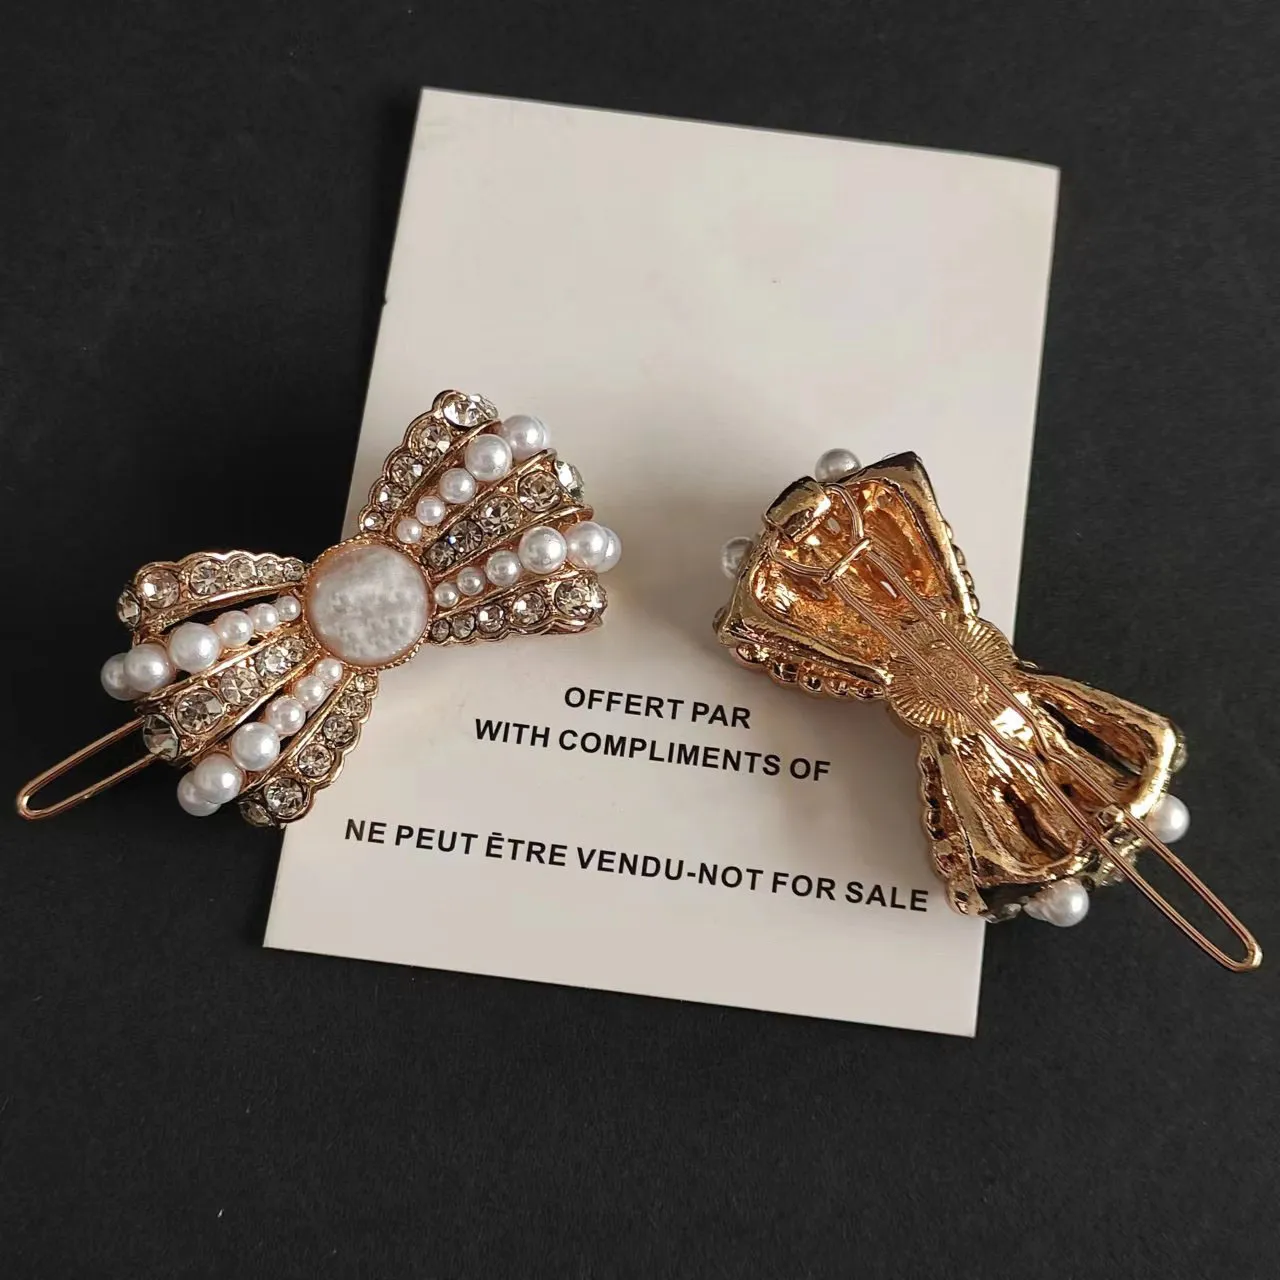 moda metallo bowknot Barrettes perla strass C accessori per capelli regalo per feste con carta di carta